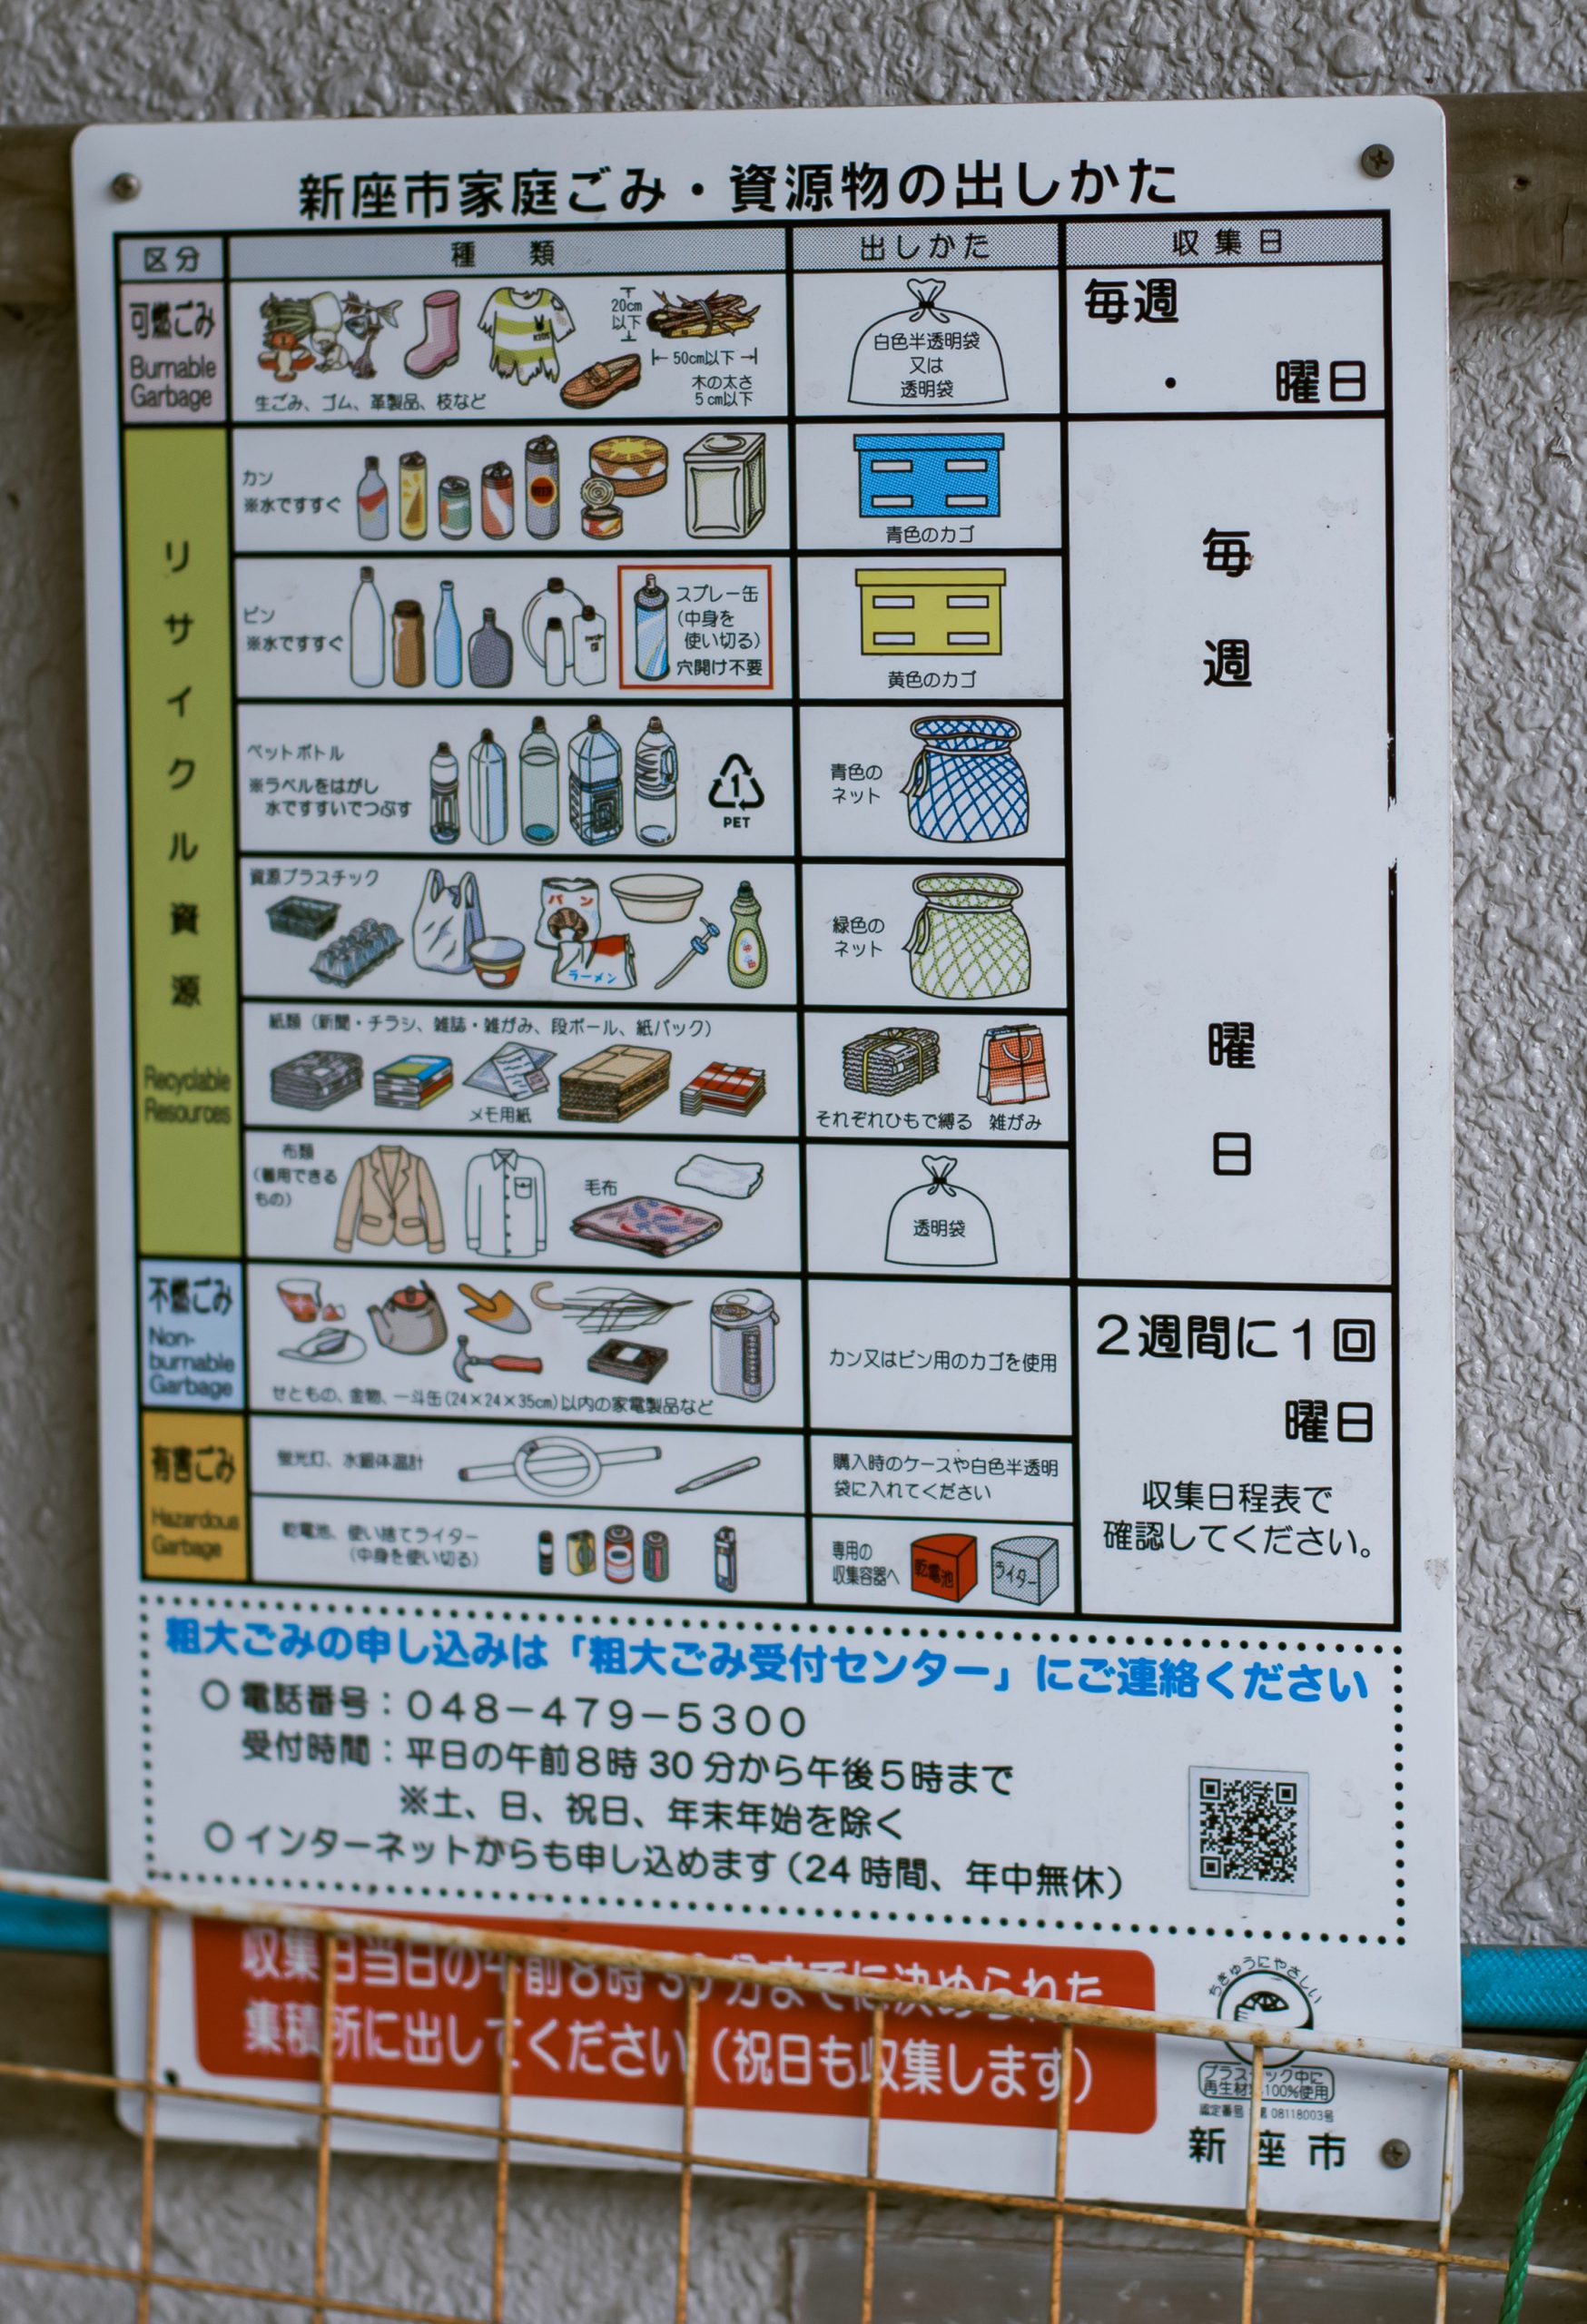 Bảng hướng dẫn phân loại rác.